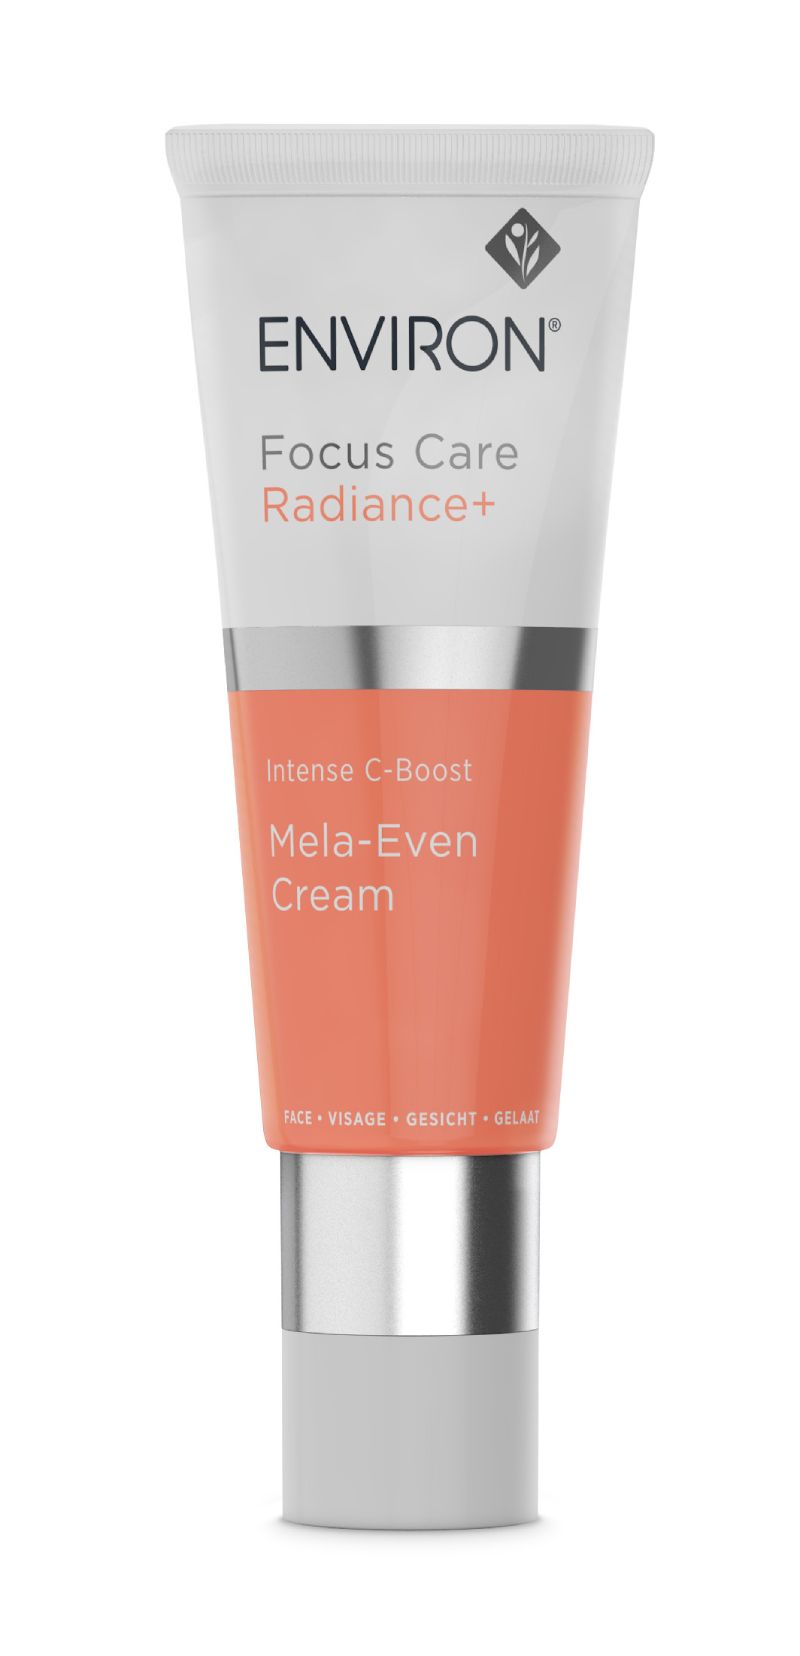 Focus Care Radiance+ | Intense C-Boost Mela-Even Cream